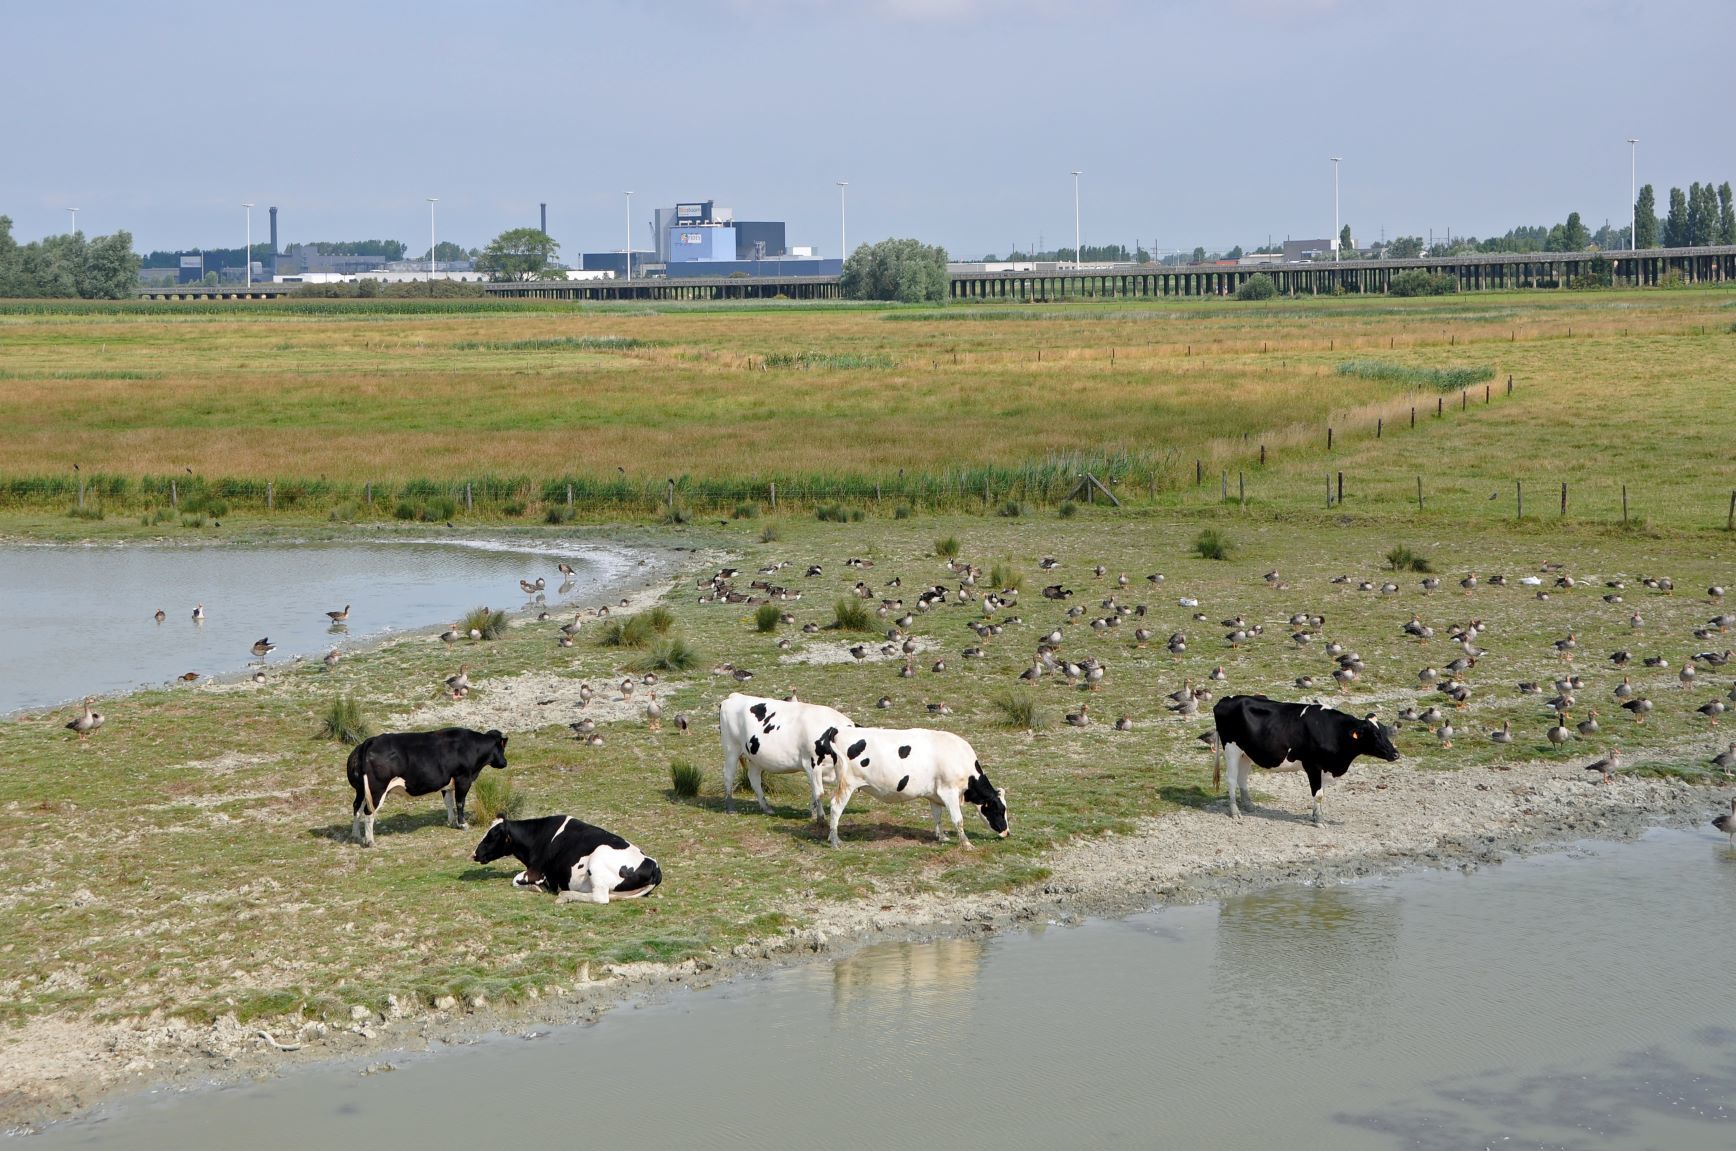 Natuurgebied in Vlaanderen met industrie op de achtergrond verkleind